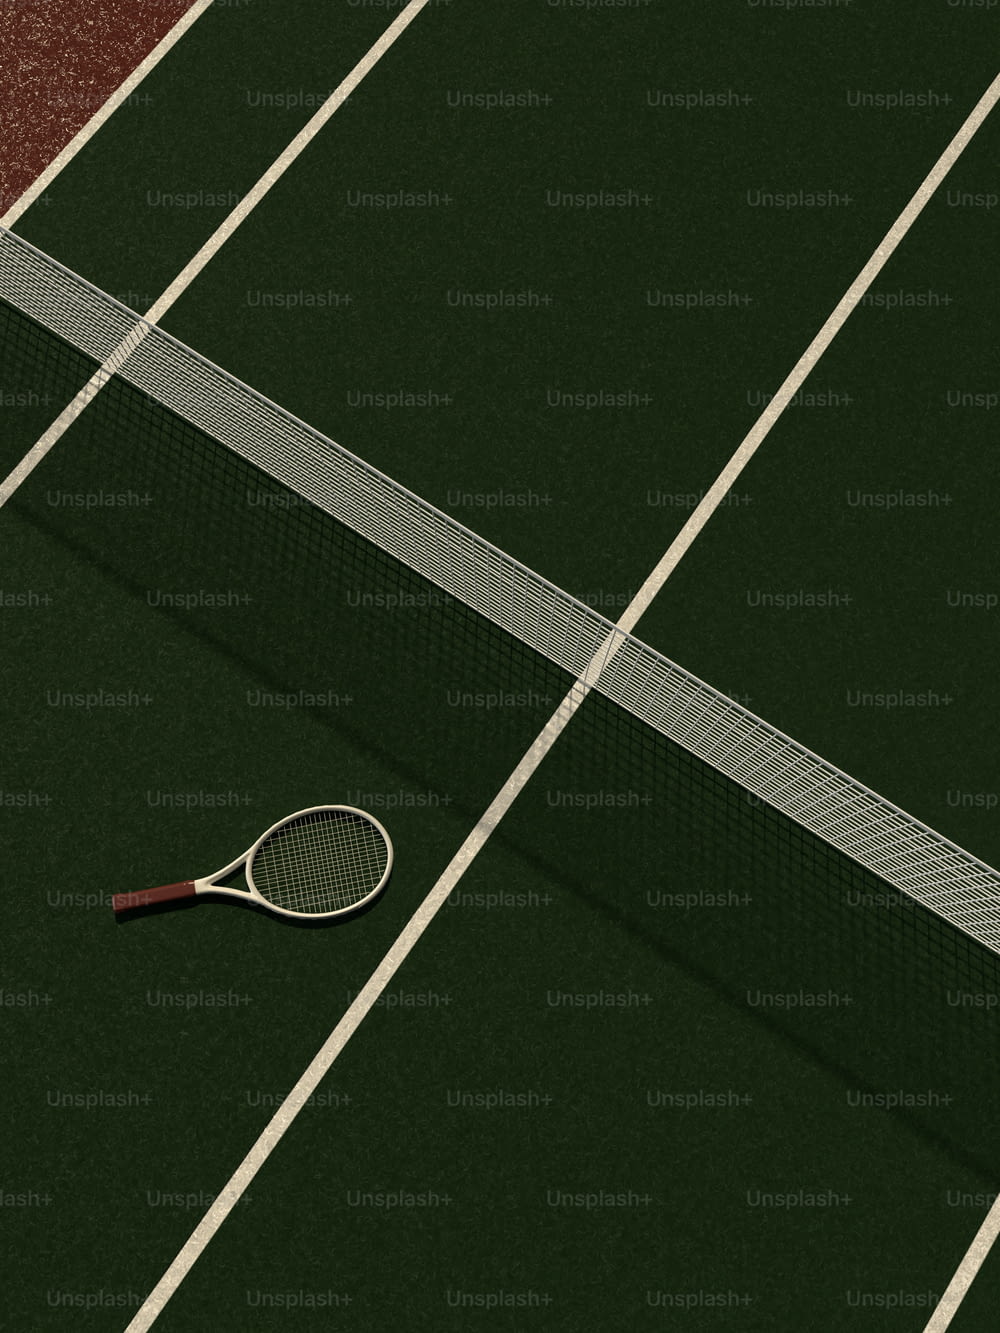 una racchetta da tennis e una palla su un campo da tennis